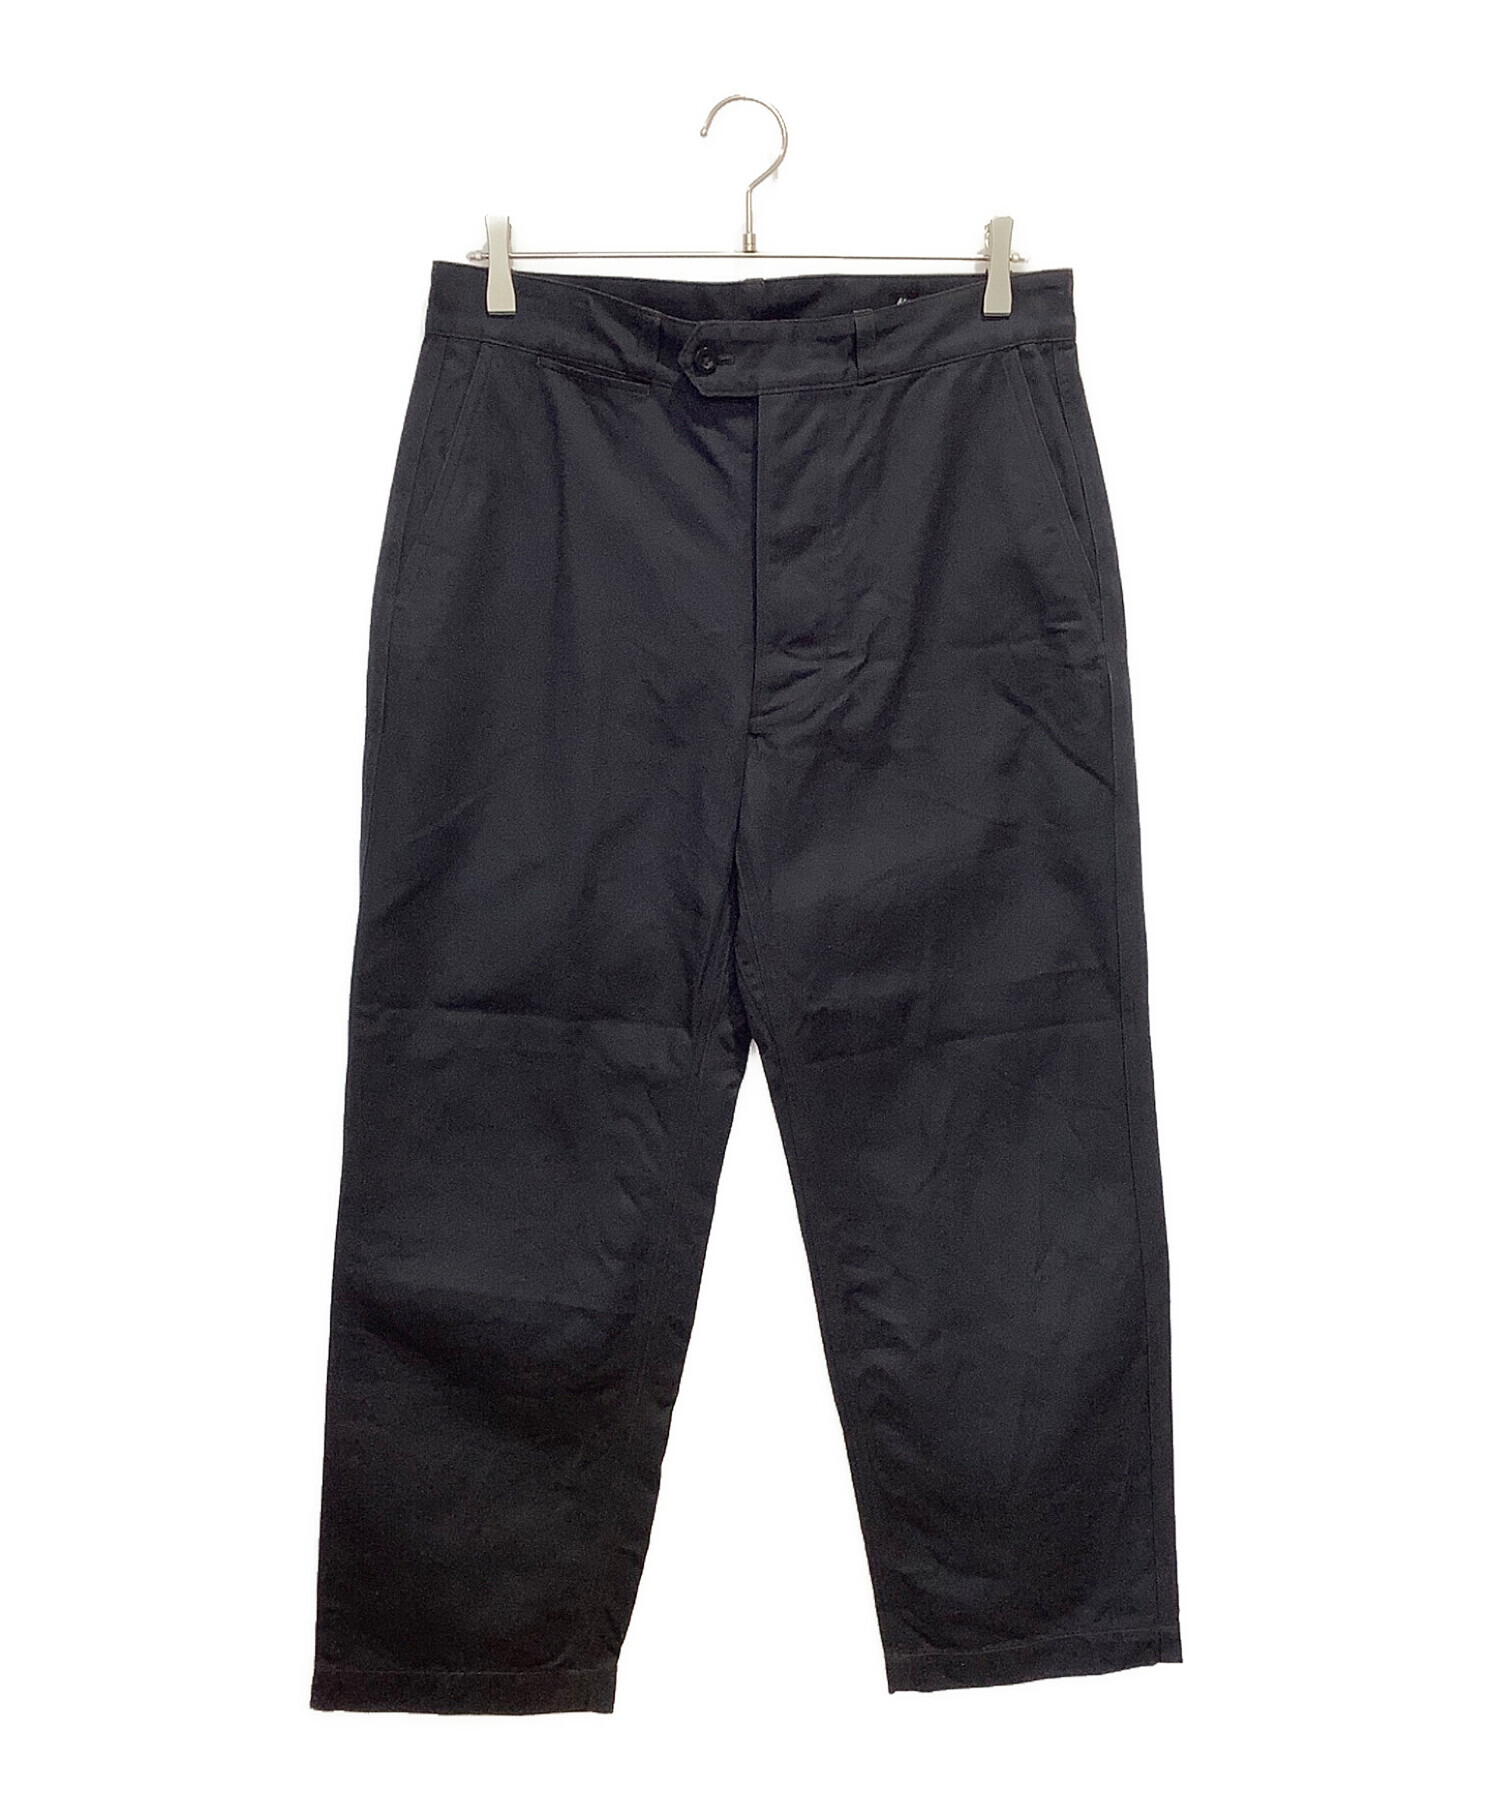 KAPTAIN SUNSHINE (キャプテンサンシャイン) Belted Work Trousers ブラック サイズ:W34